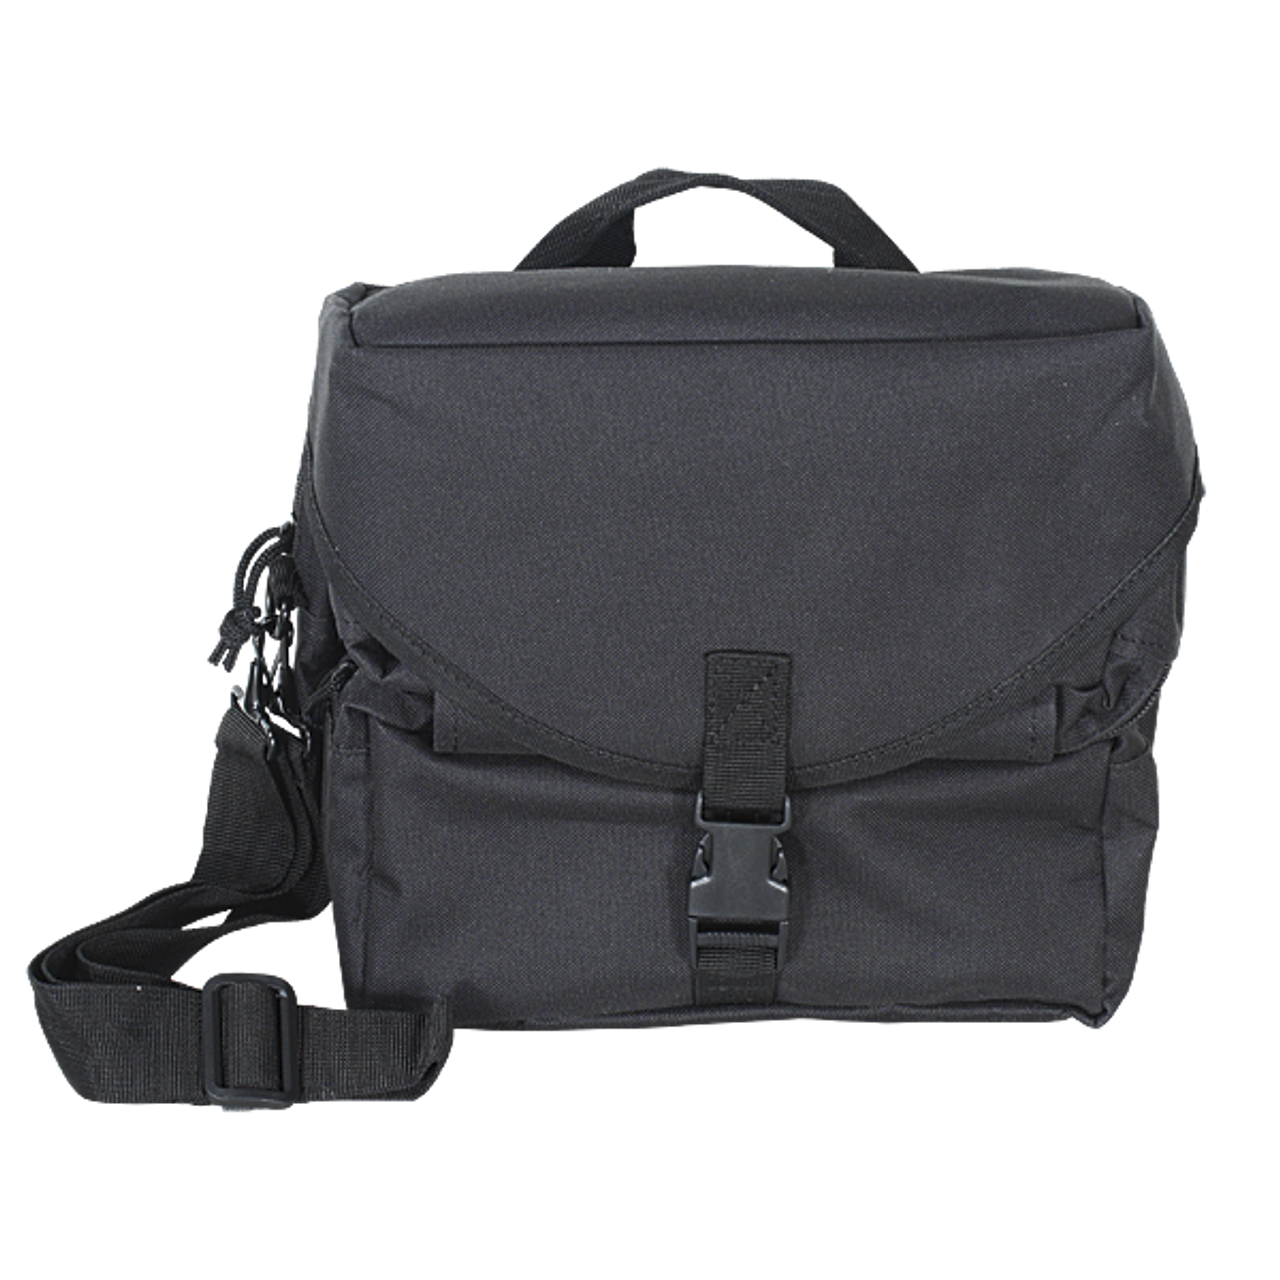 Mil-Spec+ Medical Supply Bag